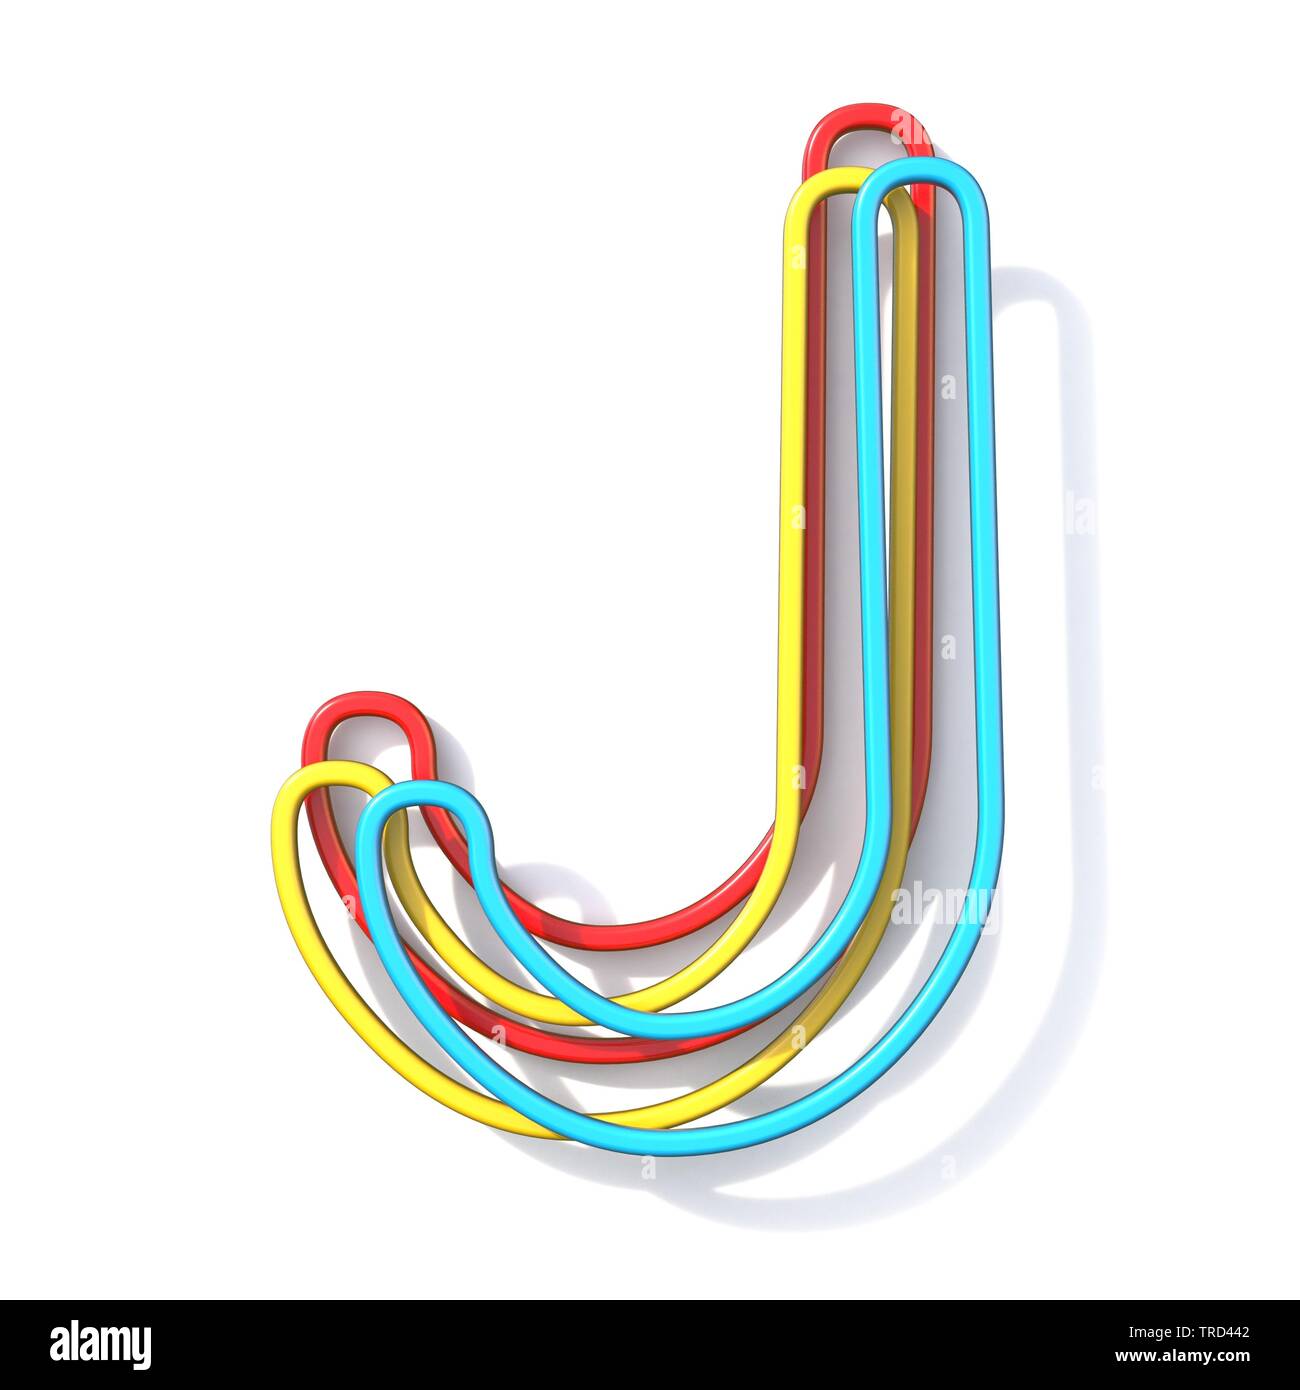 Drei grundlegende Farbe Kabel font Buchstaben J 3D Rendering Illustration  auf weißem Hintergrund Stockfotografie - Alamy